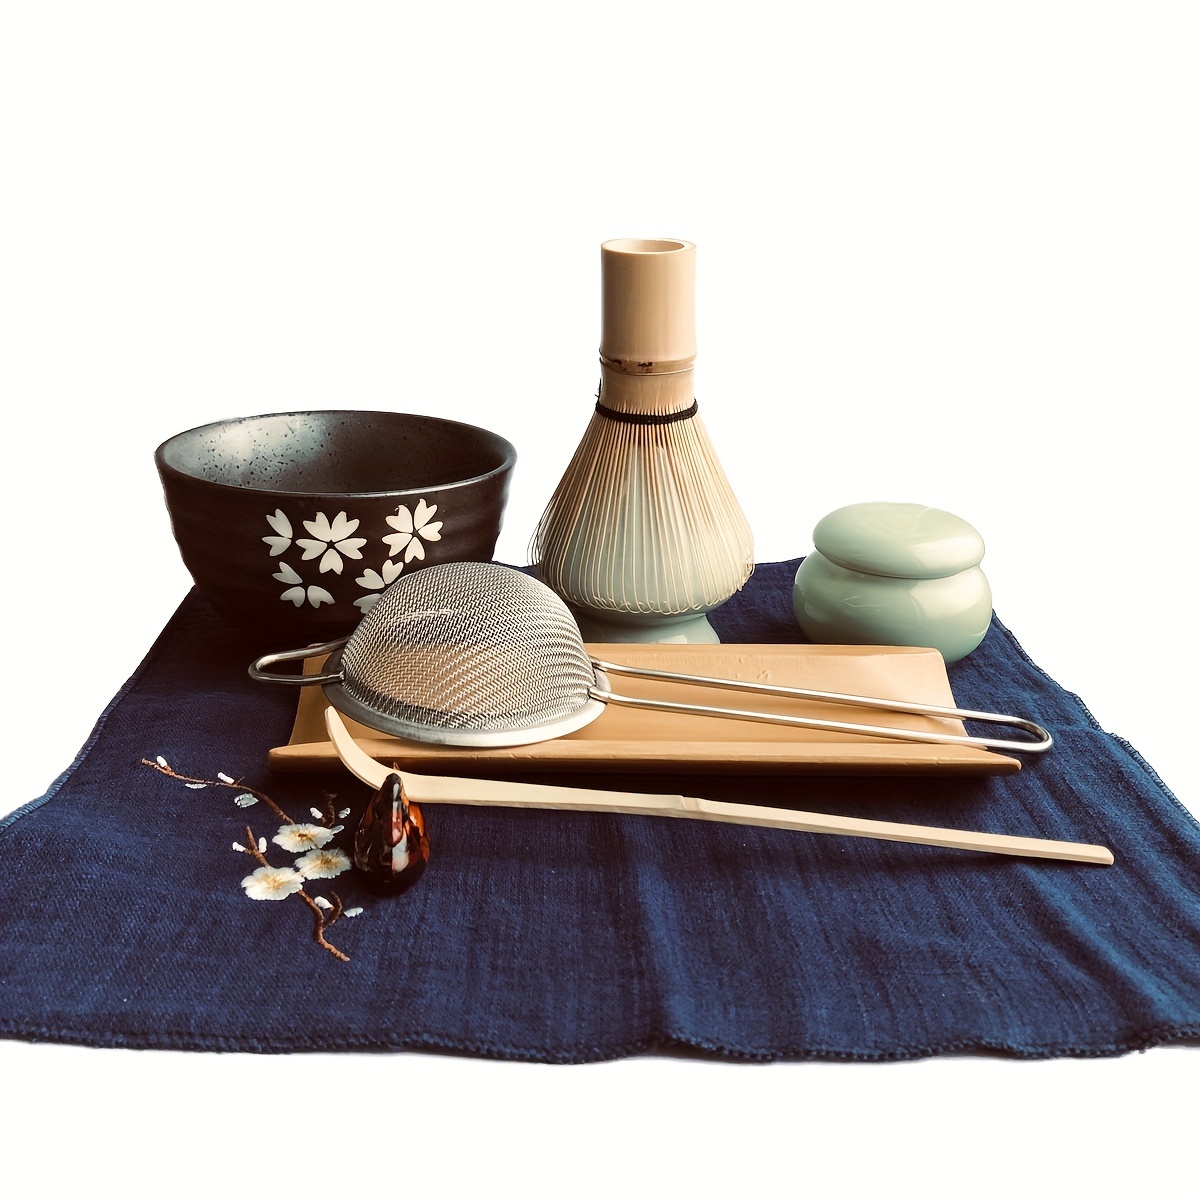 Artcome Juego de té Matcha japonés, batidor Matcha, cuchara tradicional,  tazón Matcha, bandeja de bambú negro, soporte de batidor de cerámica,  Matcha